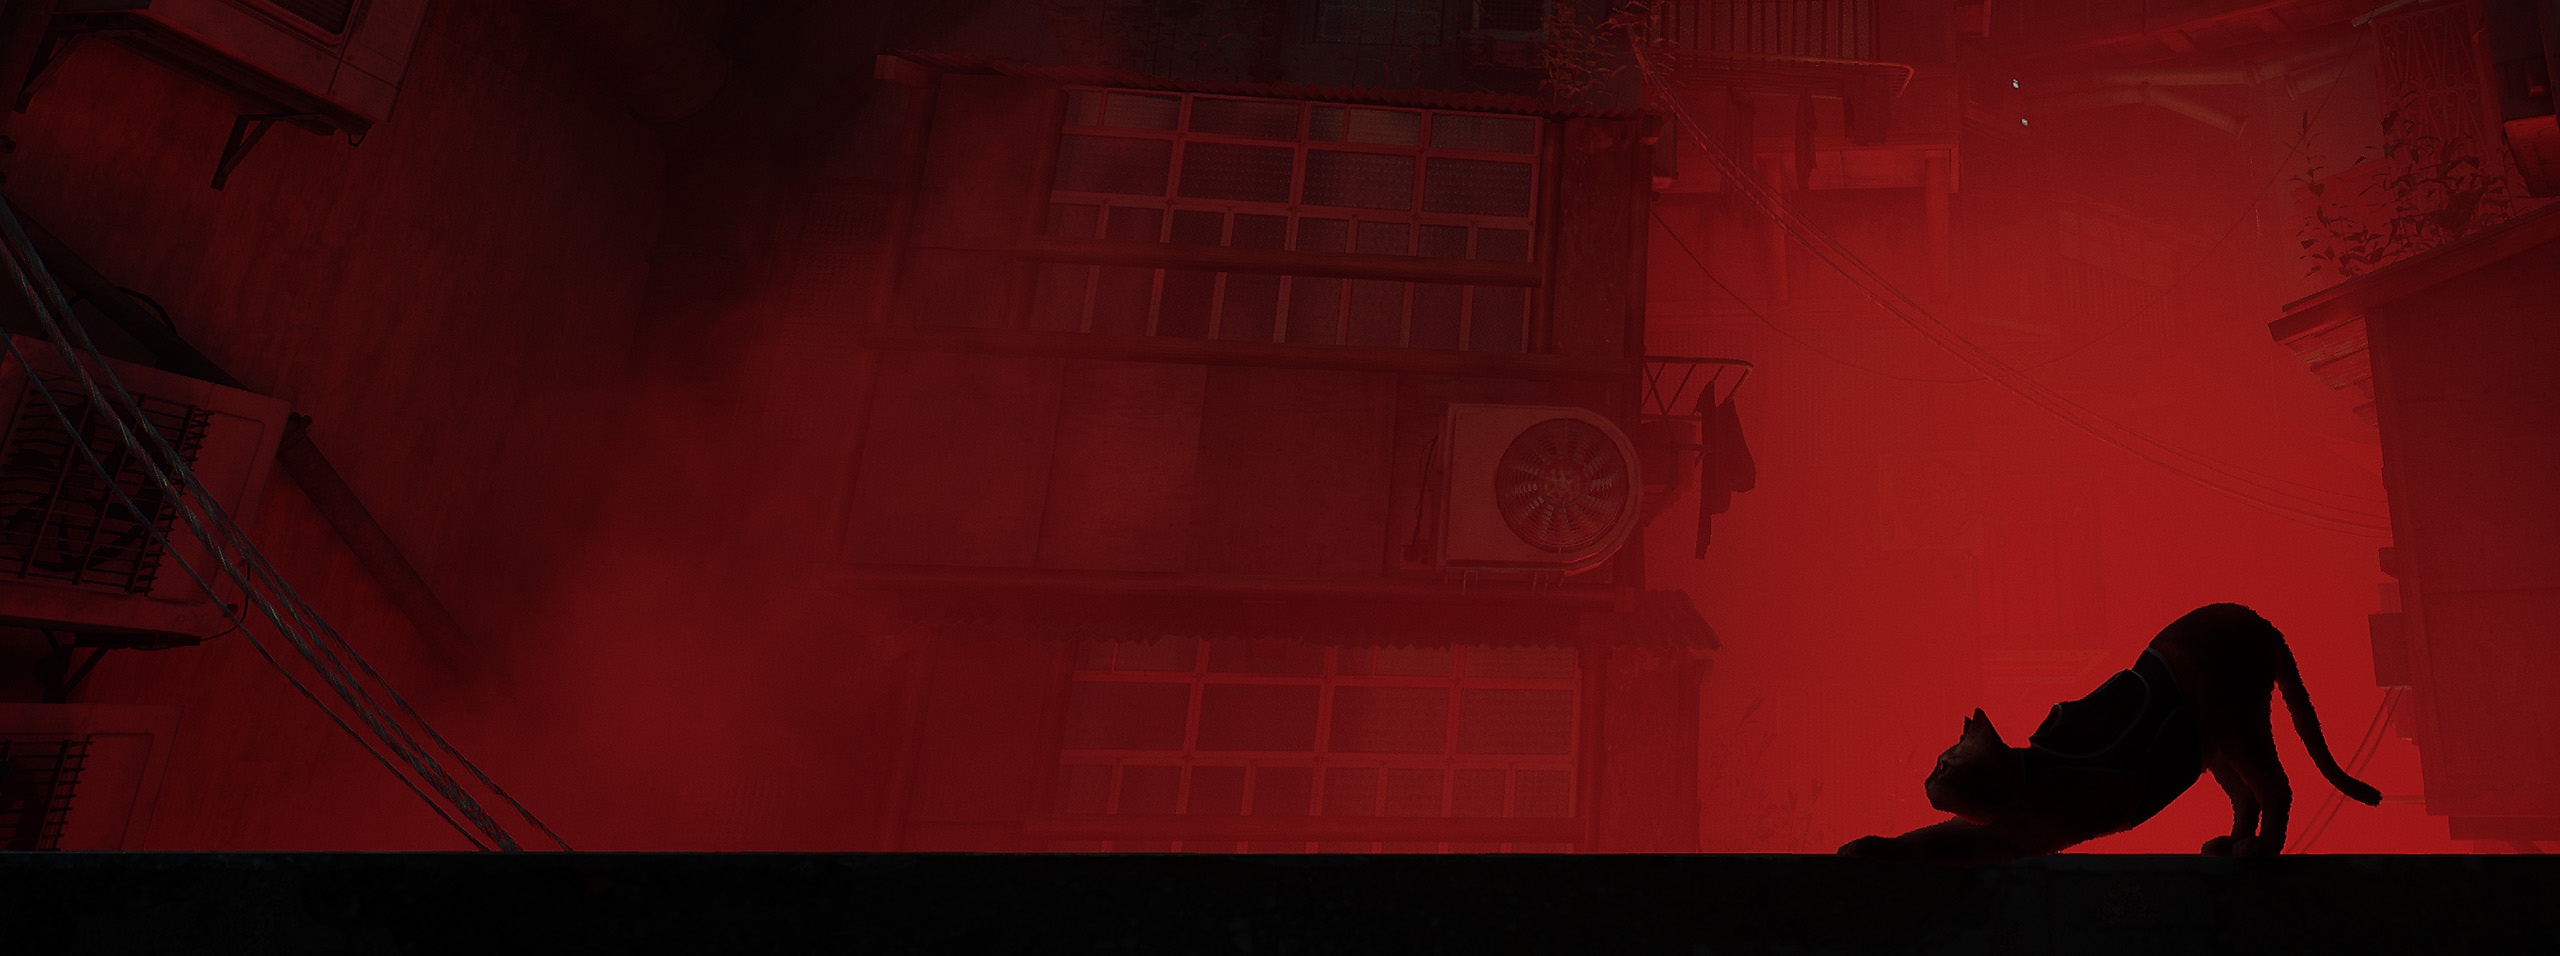 Alternatieve key-art van Stray waarin het silhouet van een kat en profil te zien is met een roodkleurige stad op de achtergrond.